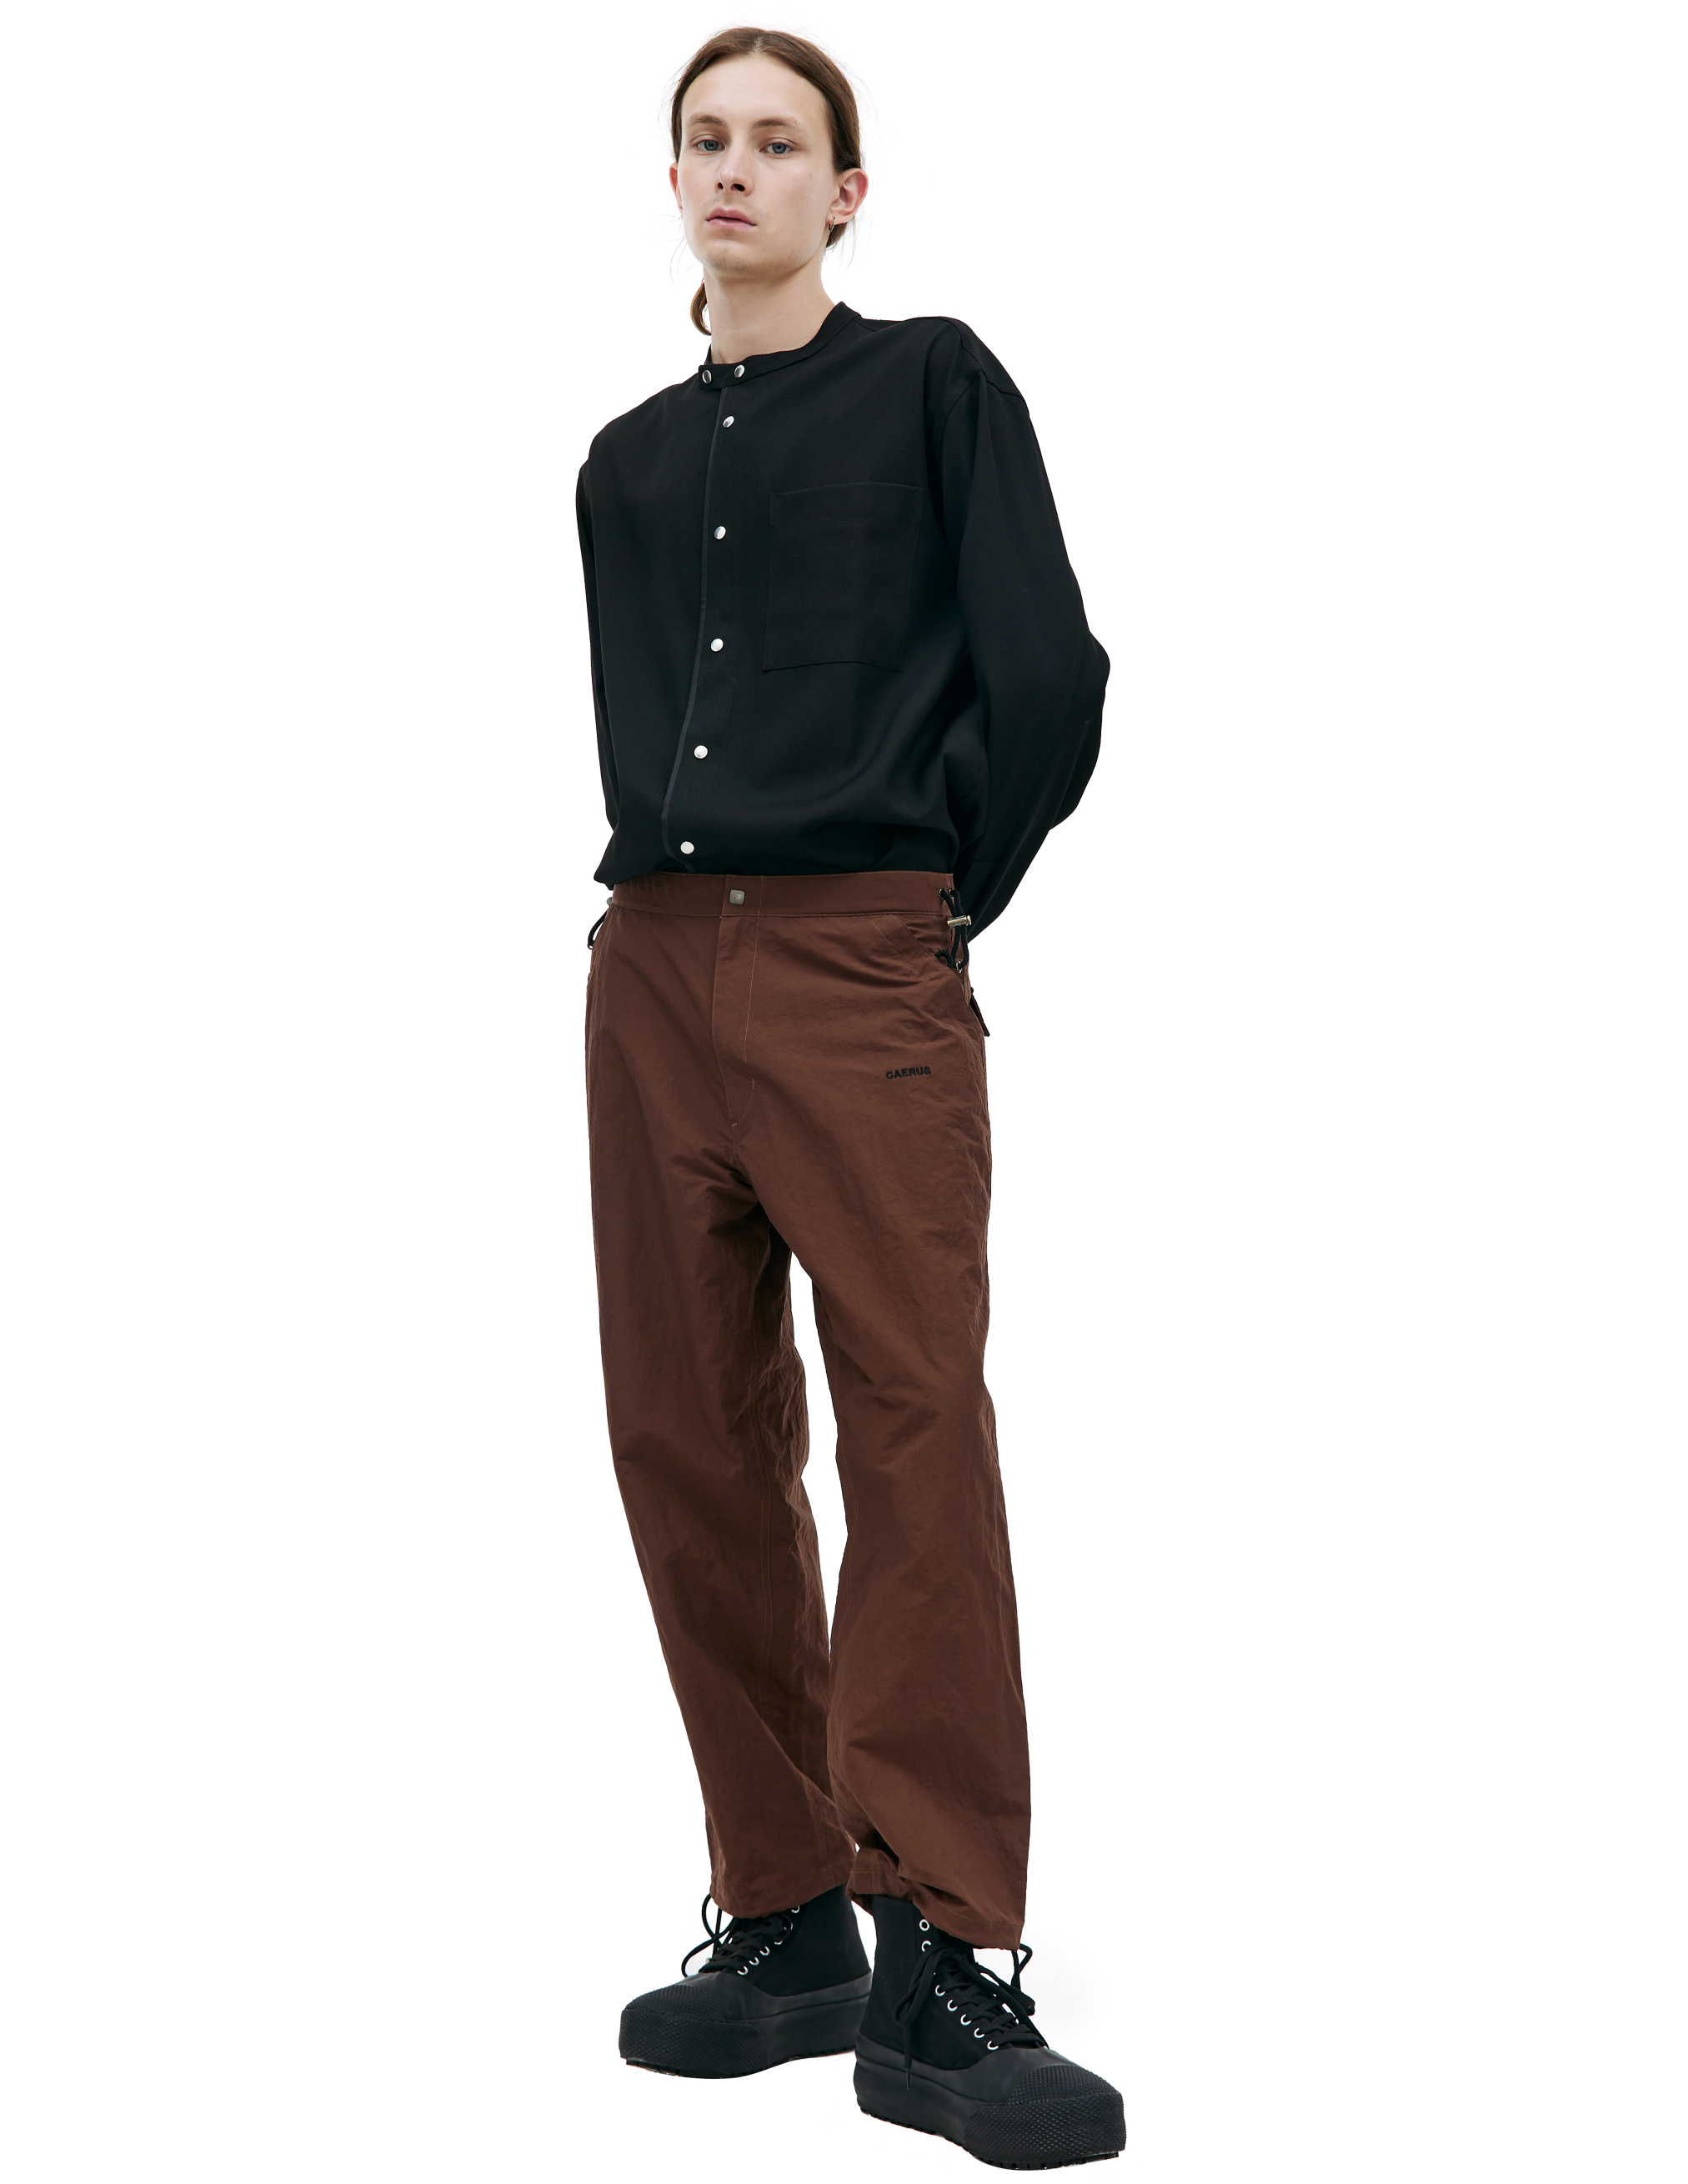 Нейлоновые брюки с вышивкой логотипа CAERUS PT-001/BROWN, размер 2